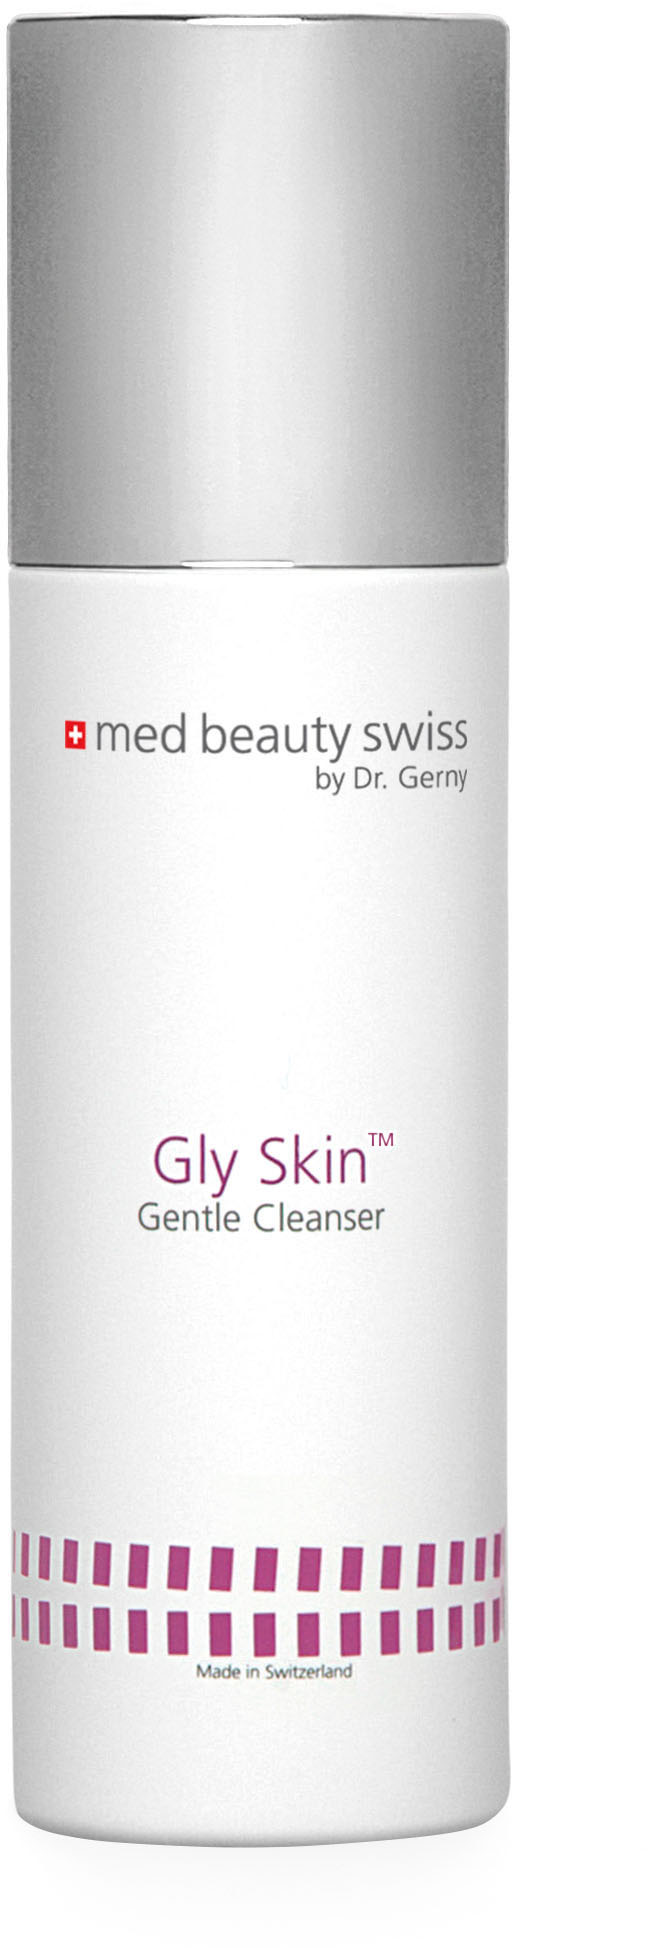 Gesicht: Gly Skin Gentle Cleanser 200ml